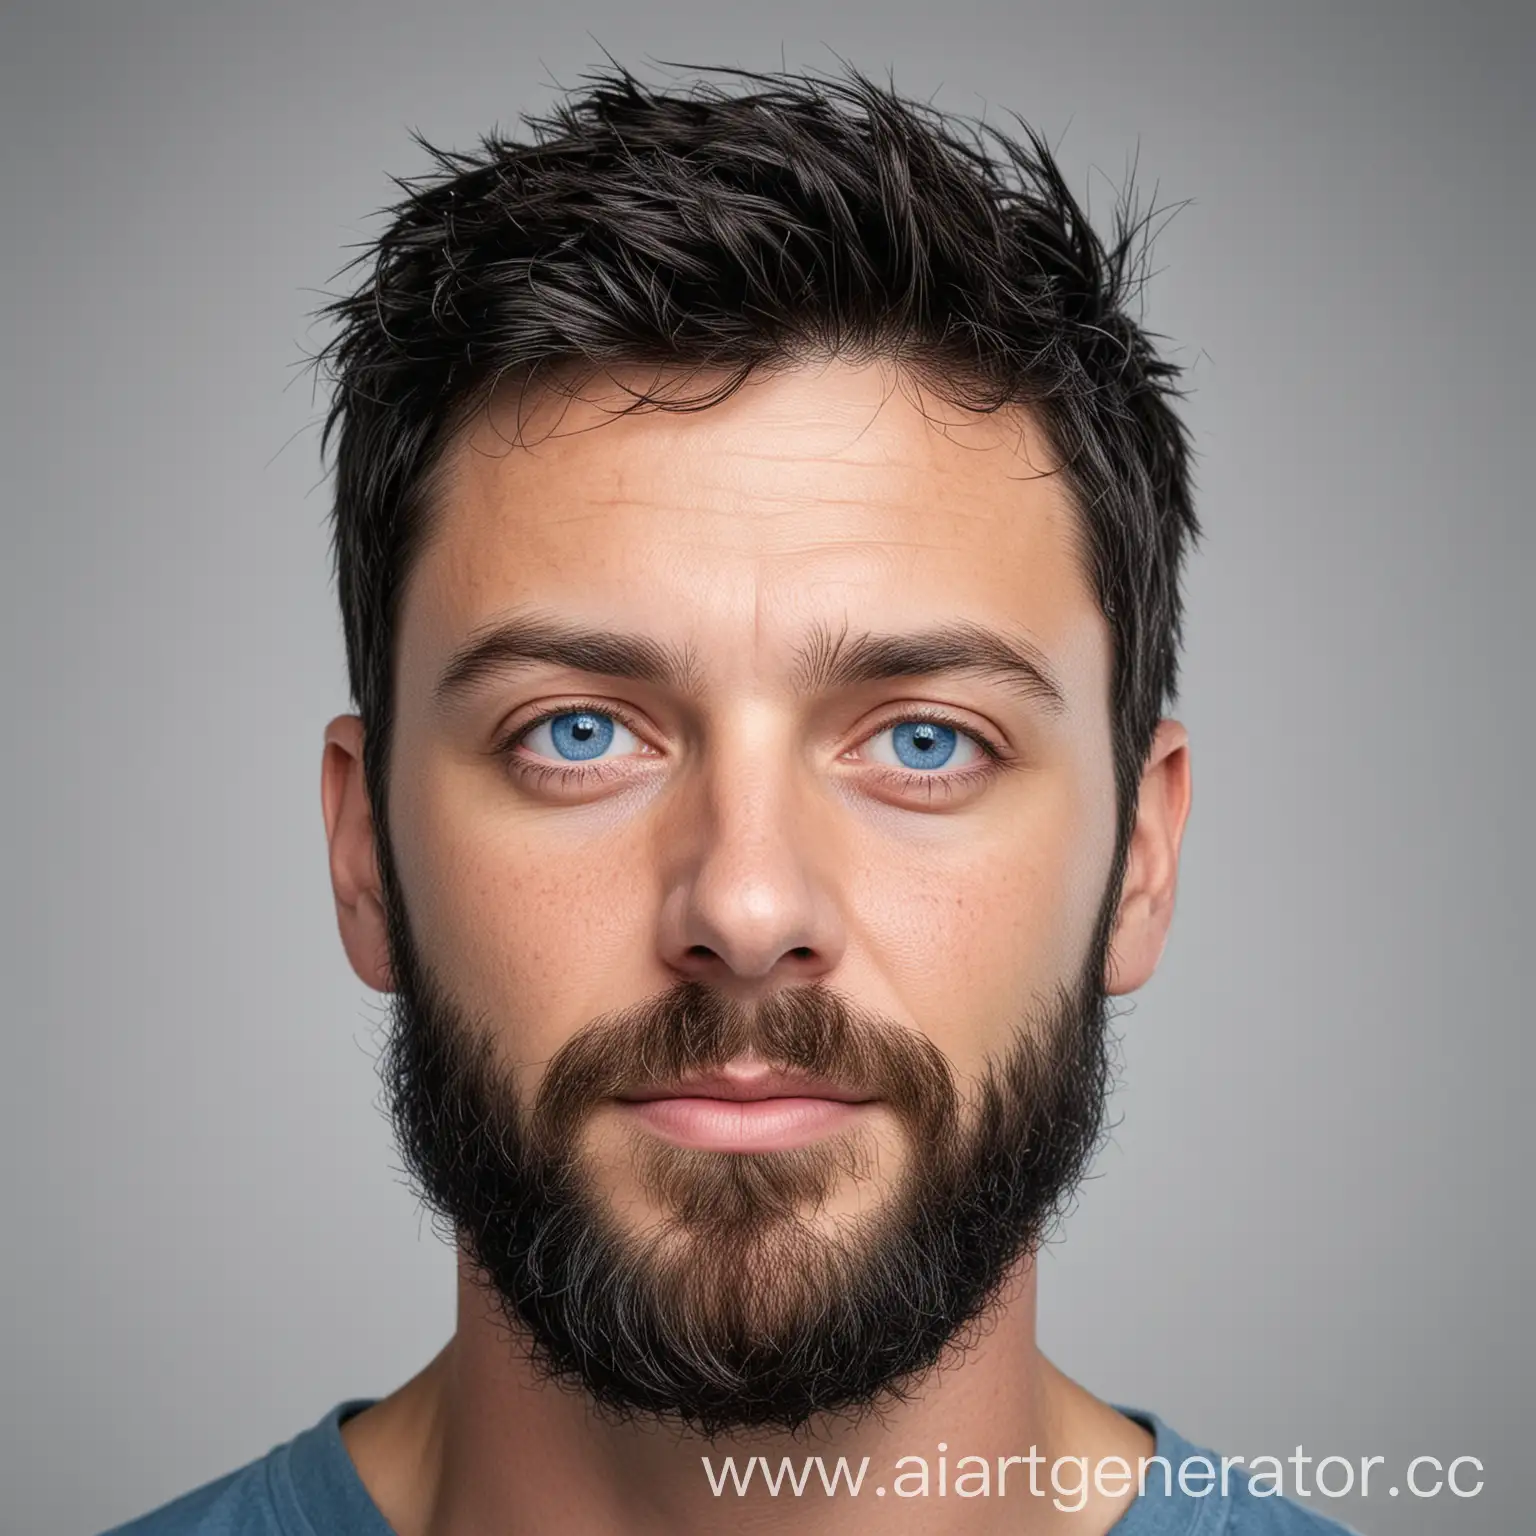 фото человека с белым фоном, мужчина в возрасте 30-40 лет, европейской внешности, черные волосы, с бородой, голубые глаза